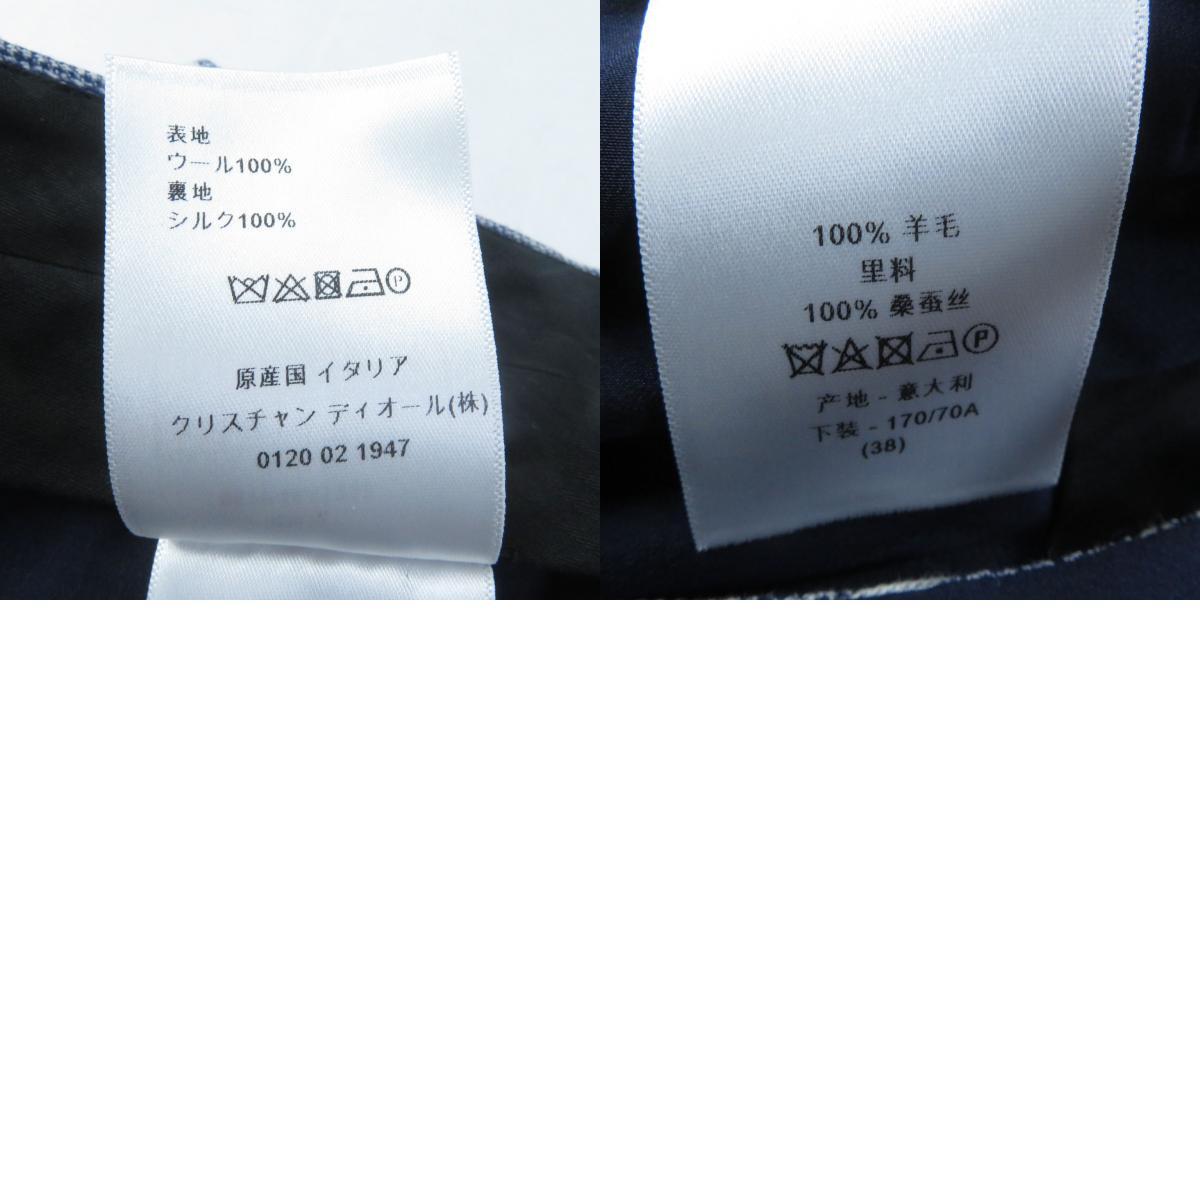  превосходный товар Christian Dior 051P48A1237 подкладка шелк 100% полоса рисунок юбка-брюки / шорты темно-синий серый 42 сделано в Италии стандартный товар женский 